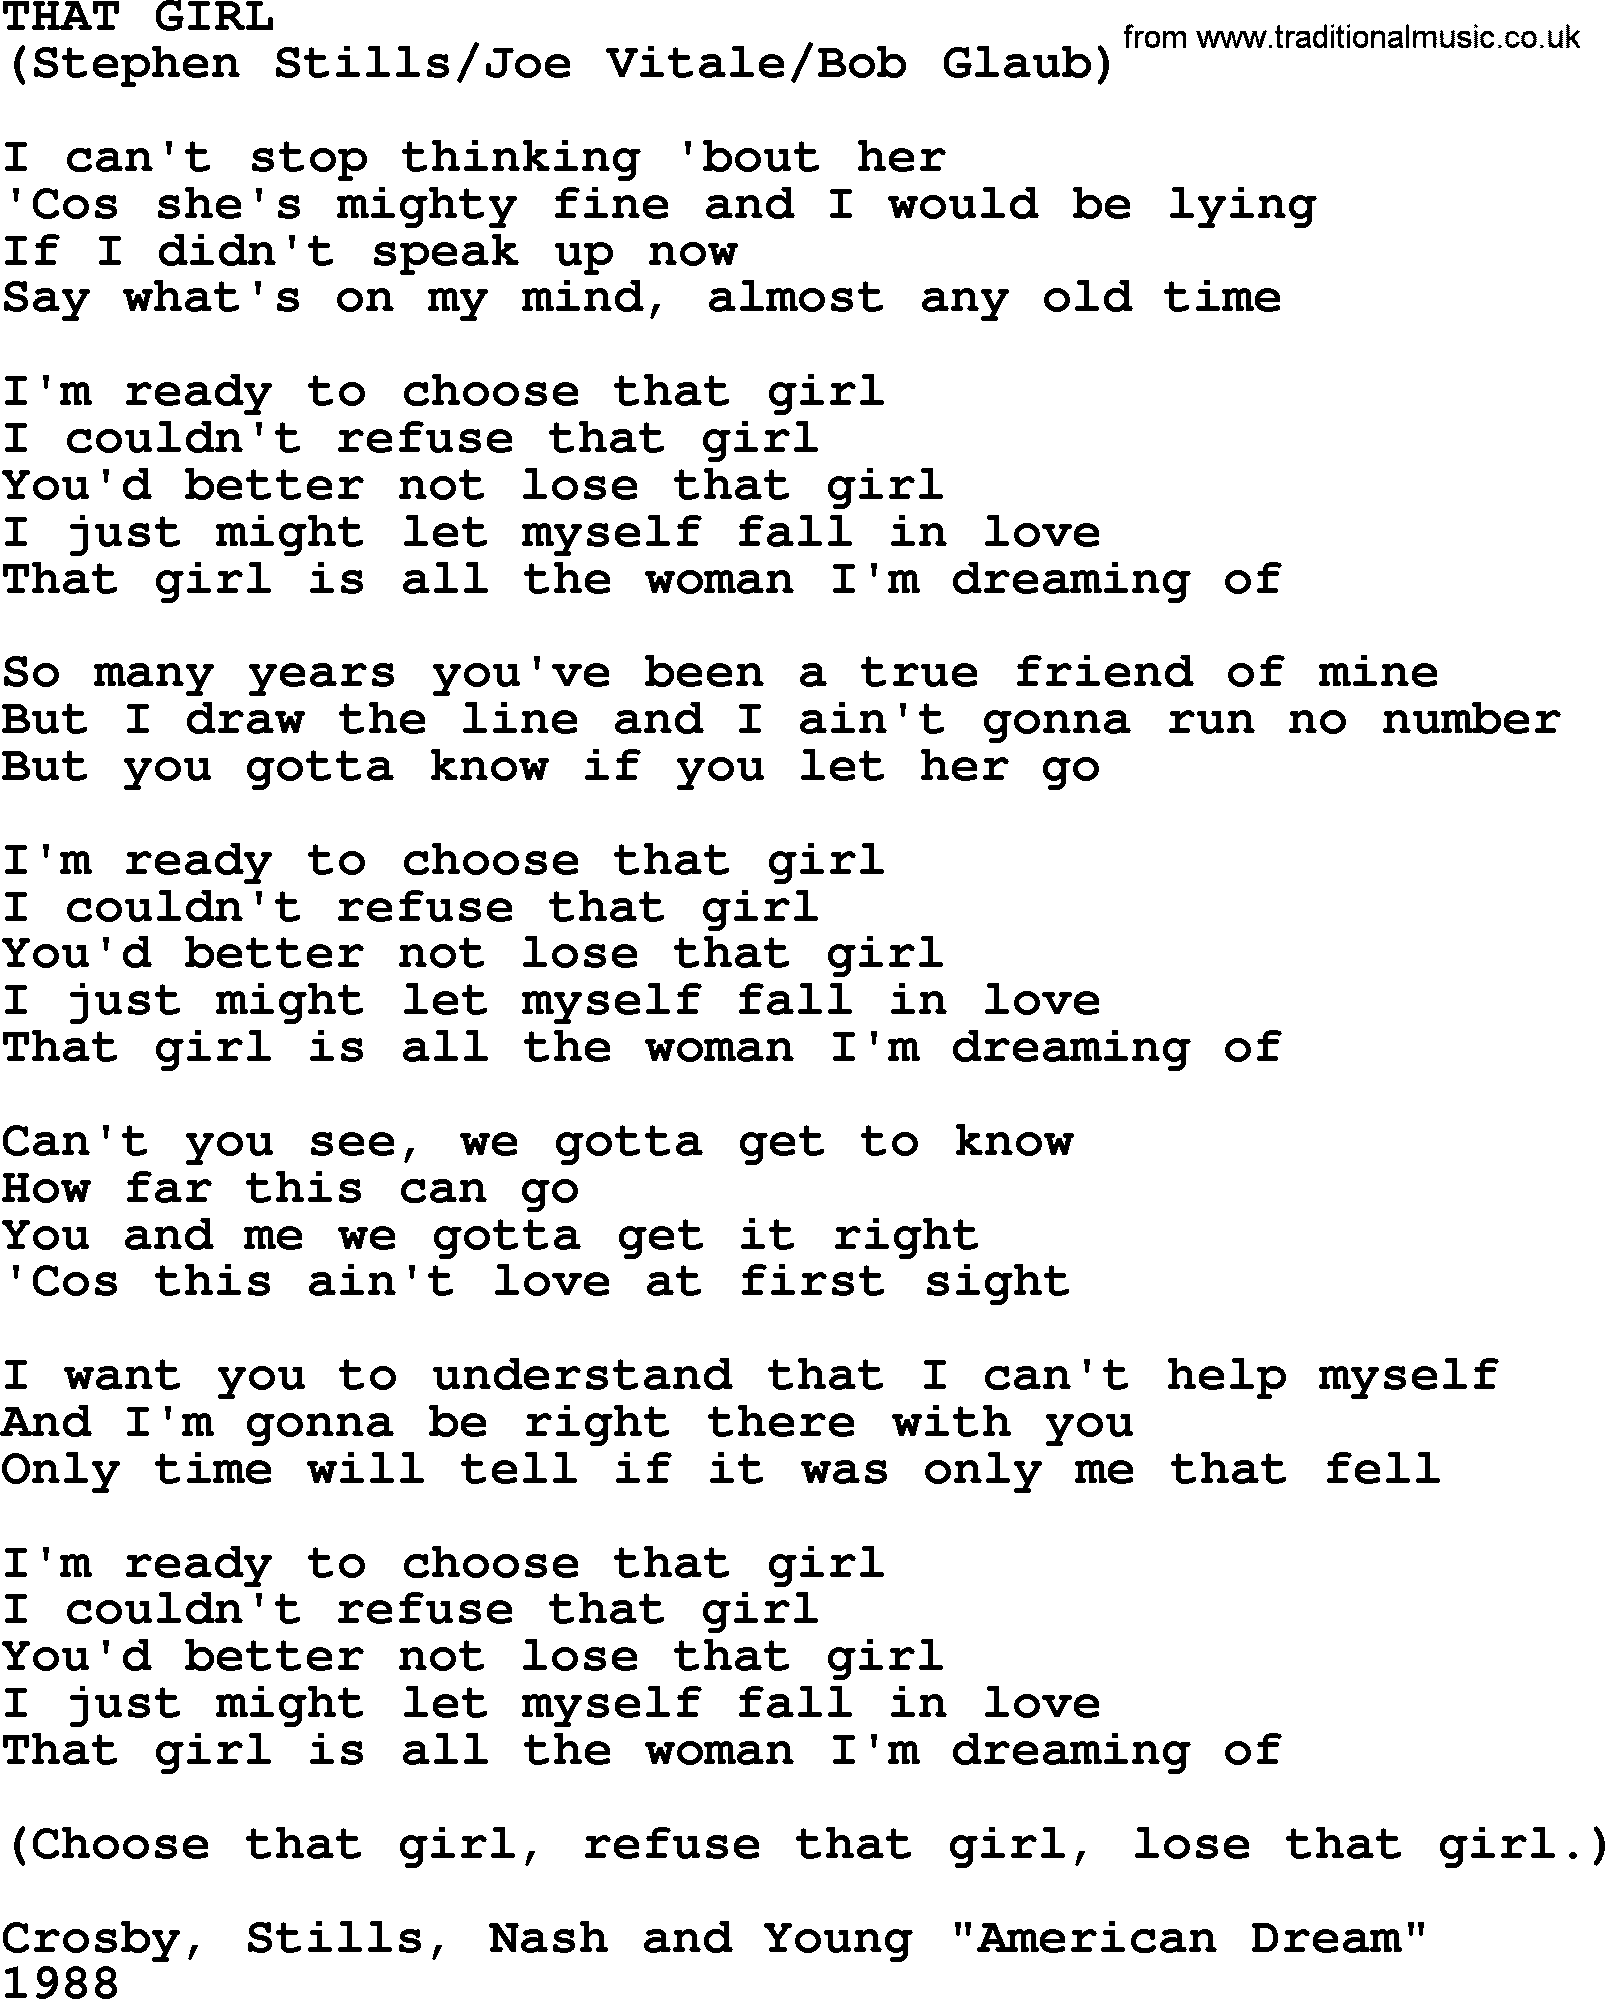 The Byrds song That Girl, lyrics